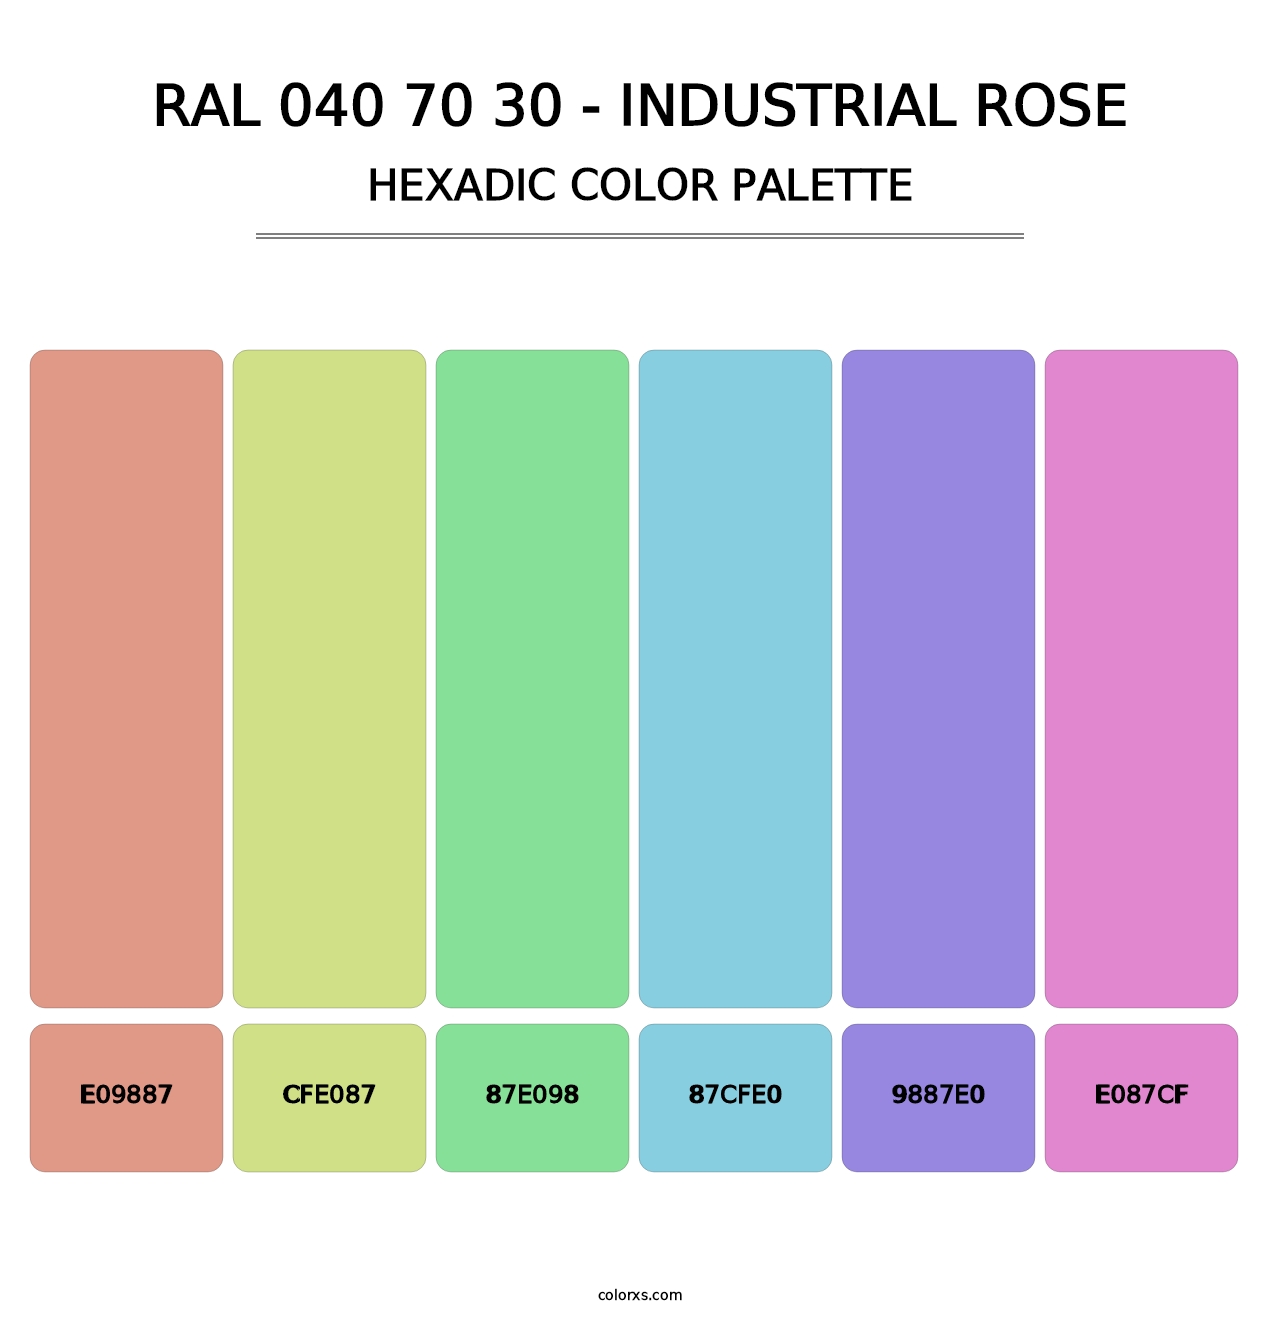 RAL 040 70 30 - Industrial Rose - Hexadic Color Palette